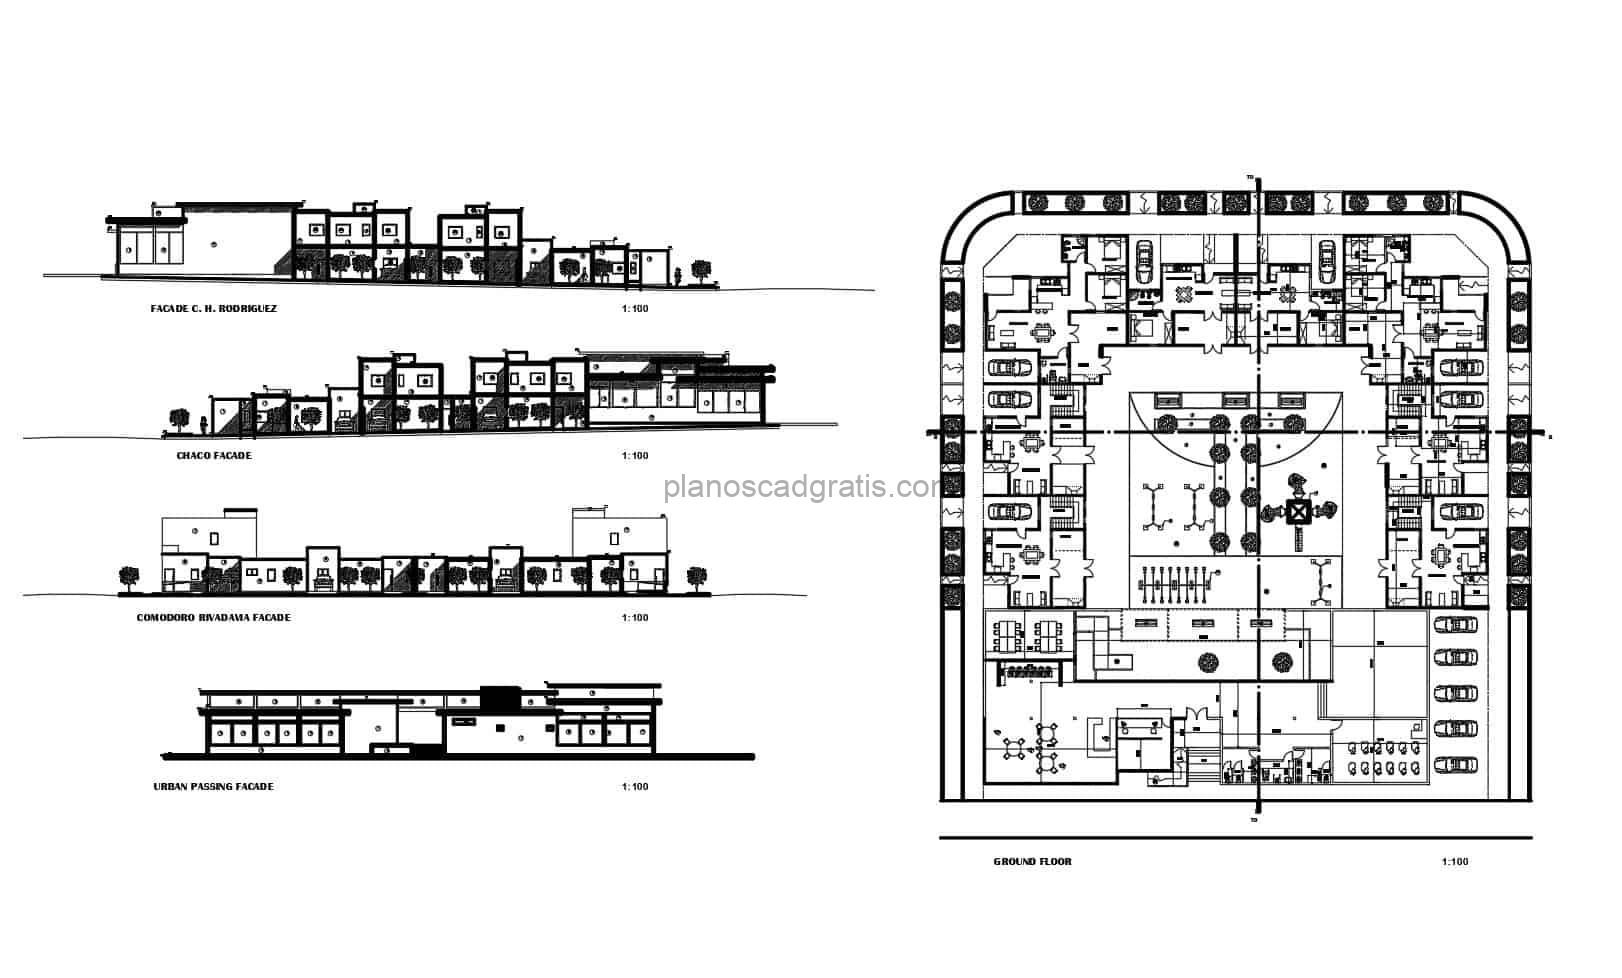 Planos de distribución arquitectónica DWG de proyecto habitacional de bajo costo, consiste en un proyecto de casas alrededor de un area verde diseñado y dibujado en AutoCAD, planos con bloques de AutoCAD para descarga gratis en formato DWG